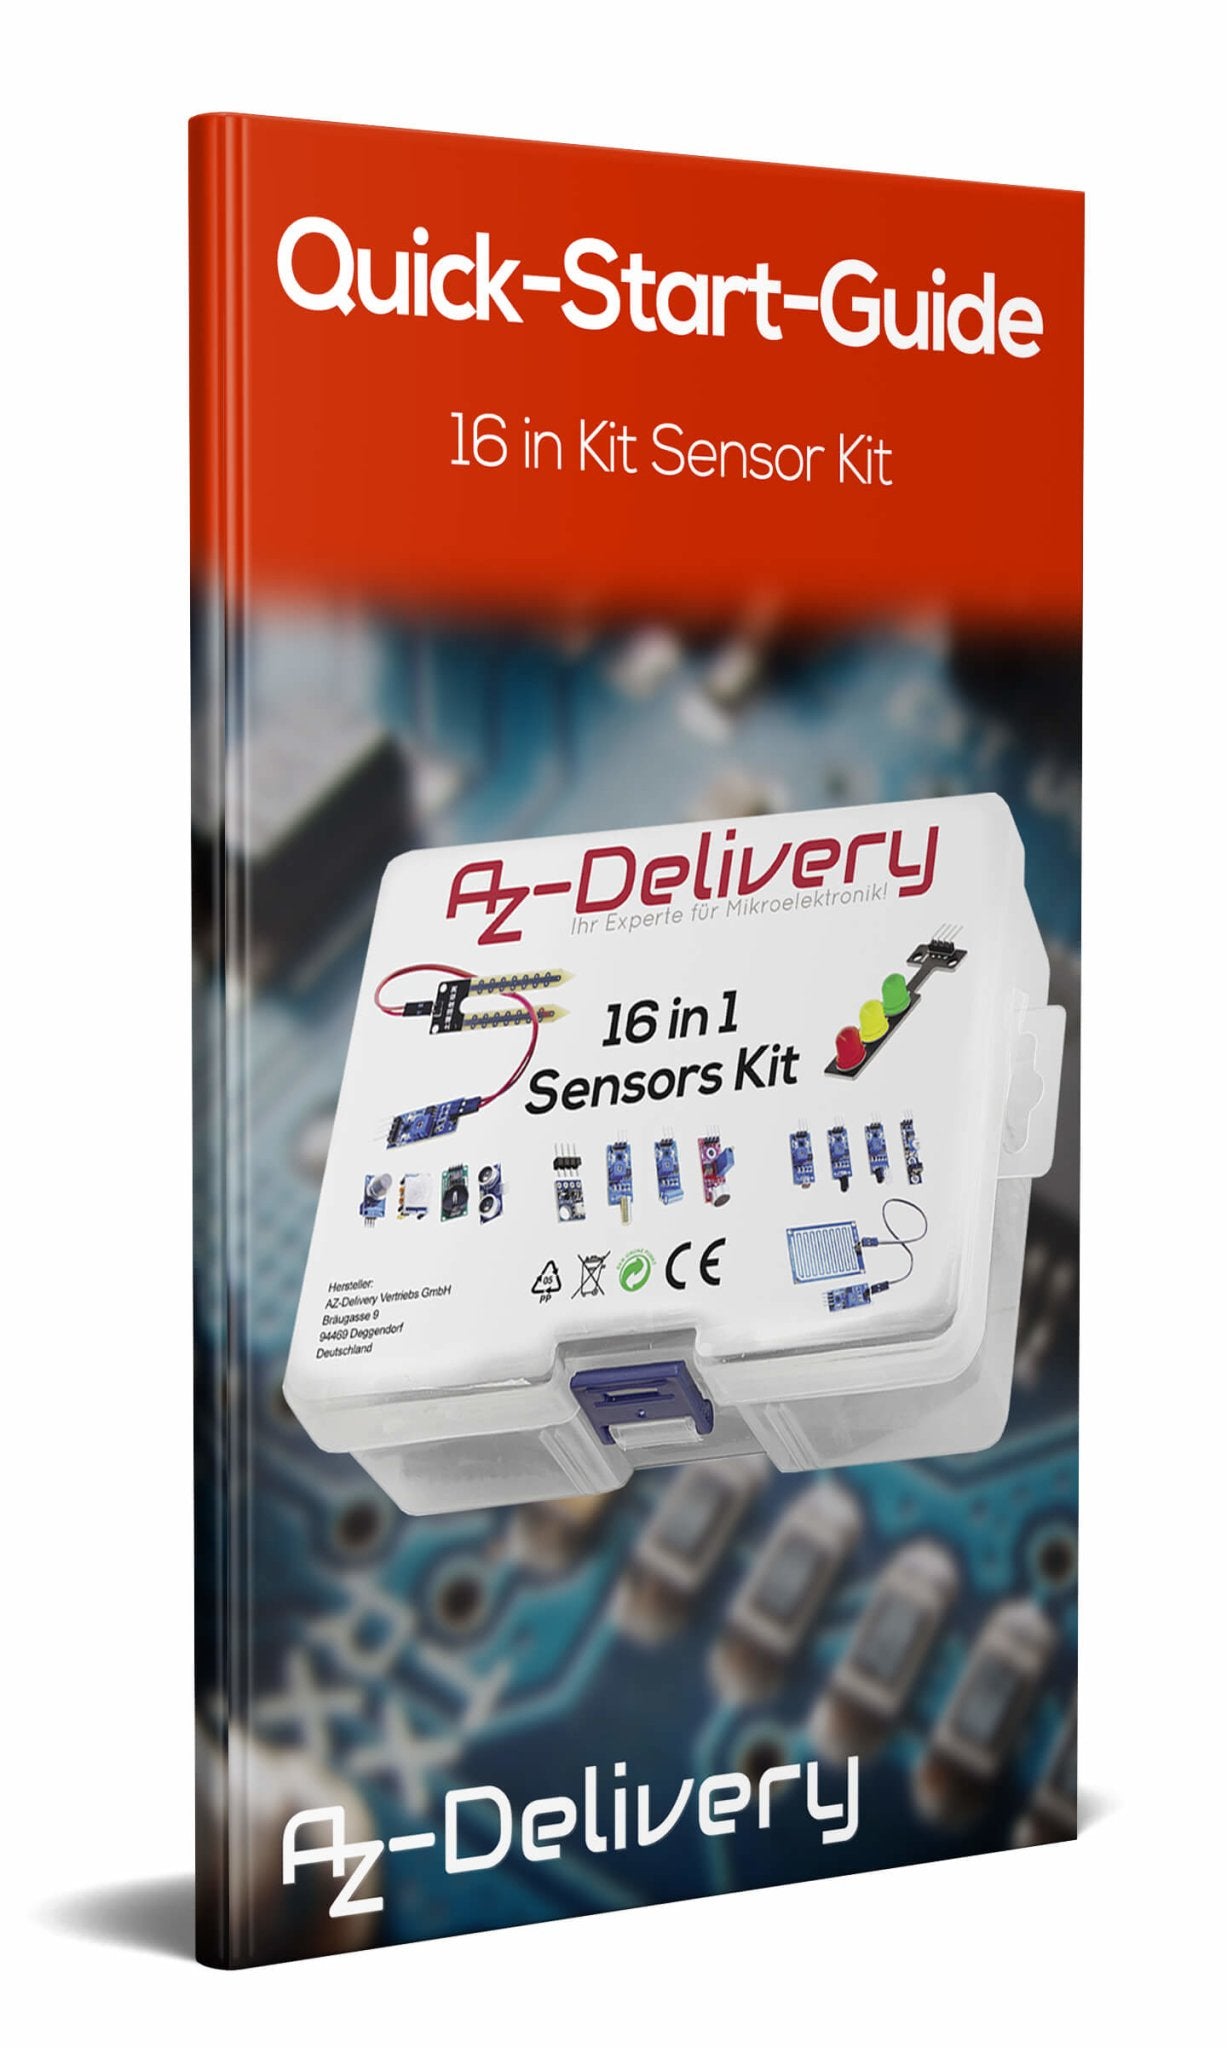 Kit 16 in 1 - set di accessori per Raspberry Pi / Arduino